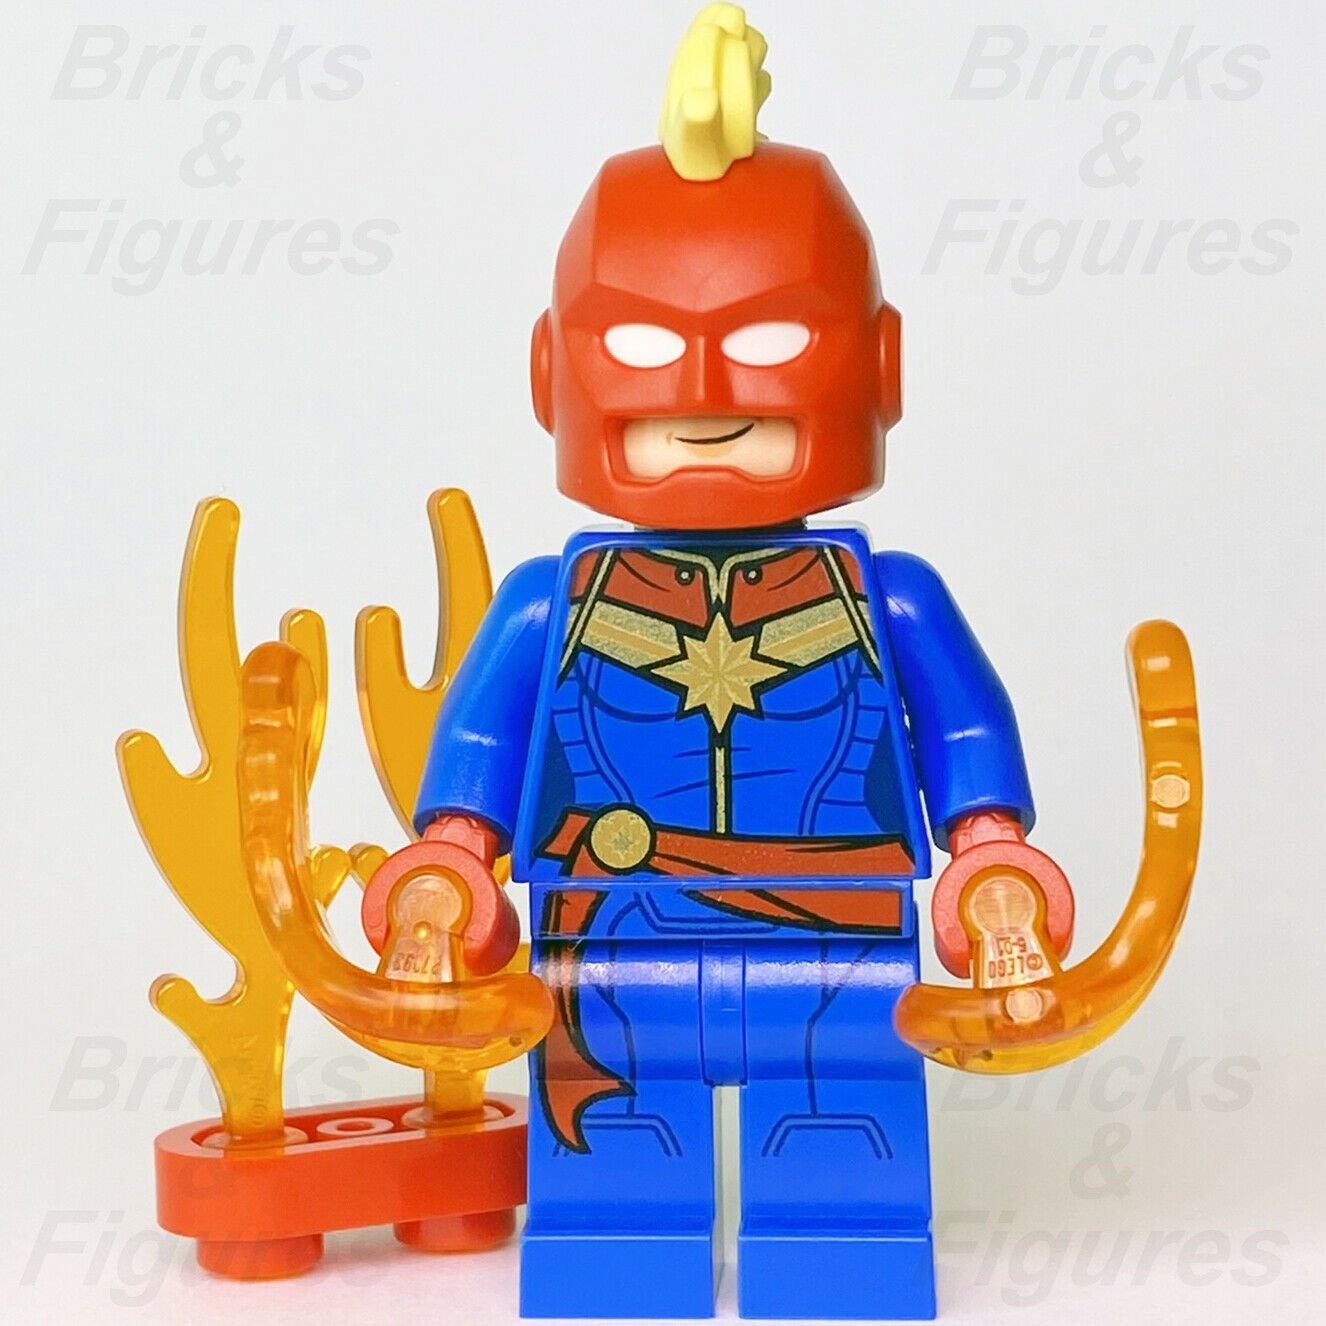 【特典付き】LEGOミニフィグMARVELマーベル5005256レゴトイザらス限定非売品 キャラクター玩具